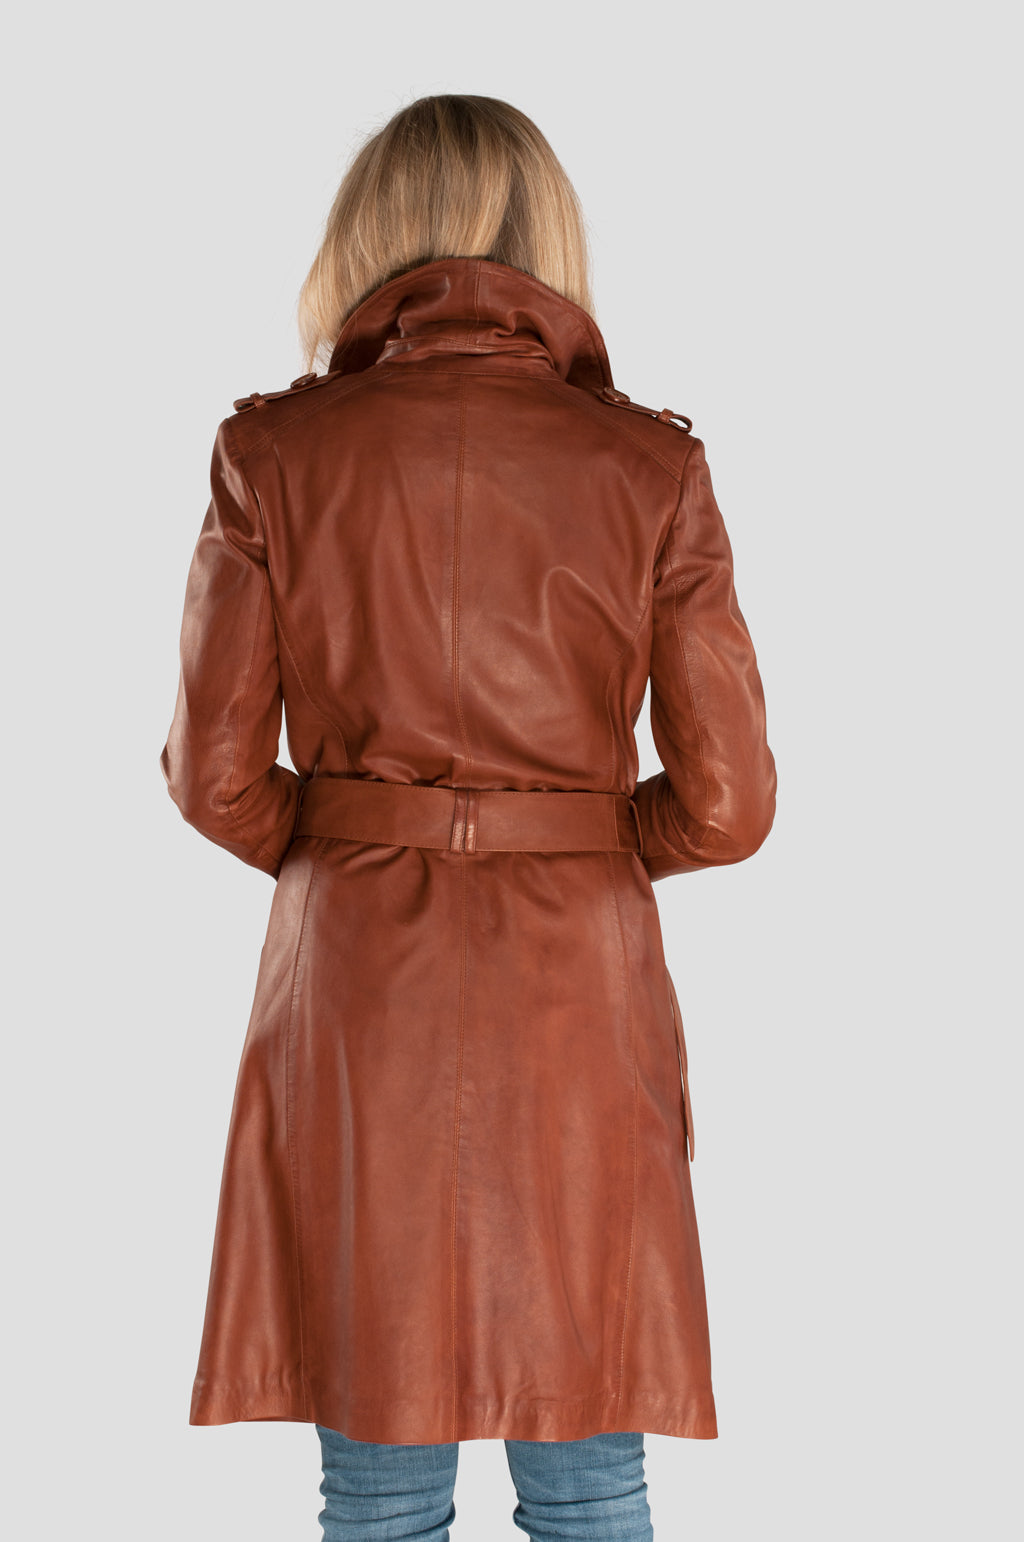 Leather Trench Coat - Women's Cognac | Leather Fashion Susanne – Ledermoden  Susanne